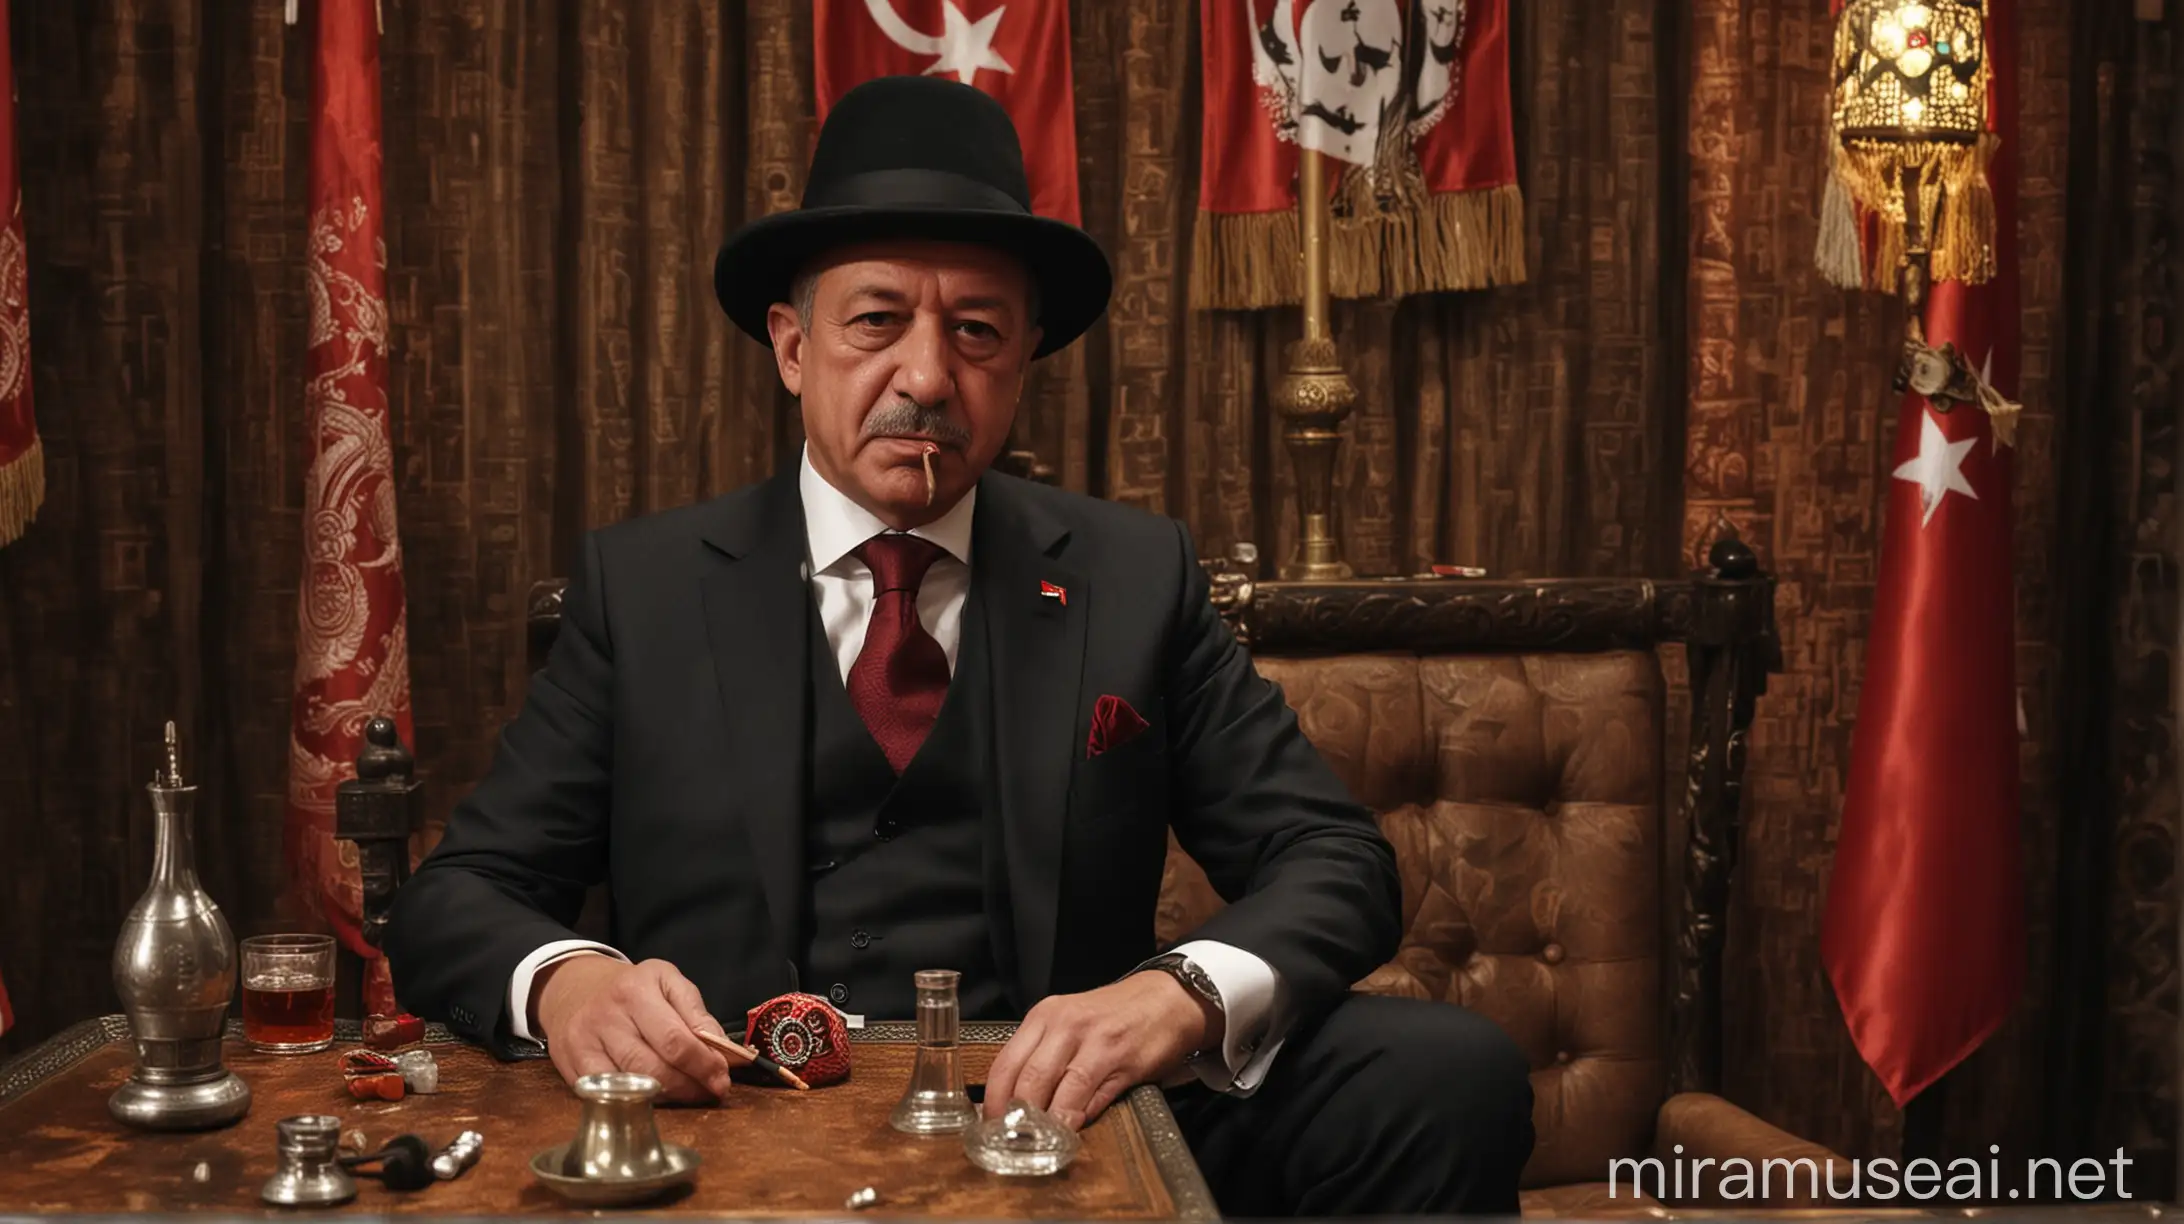 Turkish President Enjoying Shisha and Cigar in Traditional Setting